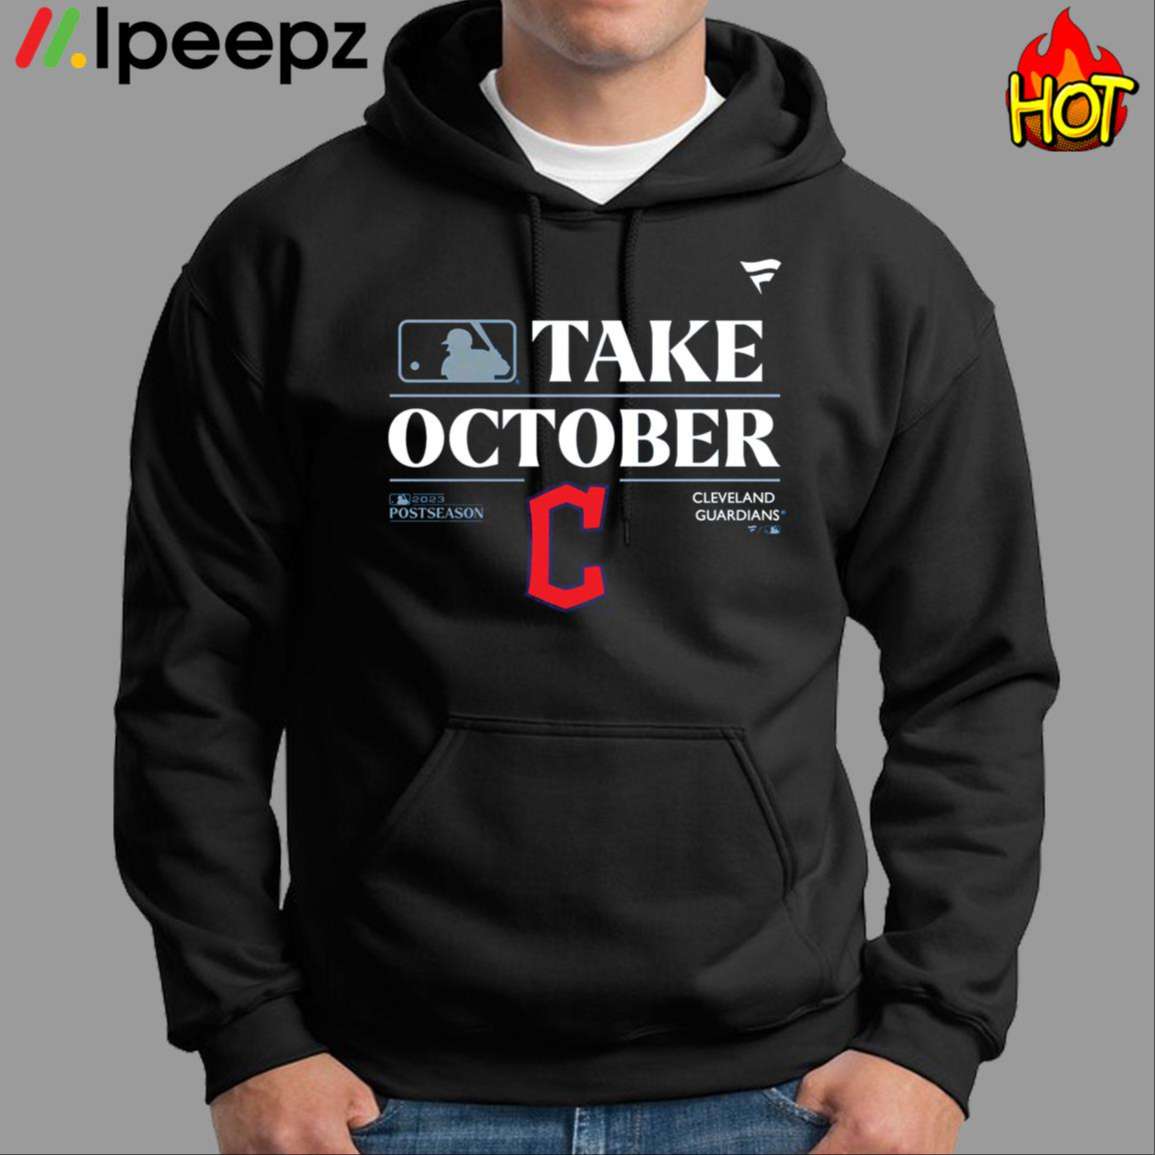 Seattle Mariners Take October Playoffs 2023 t-shirt, hoodie